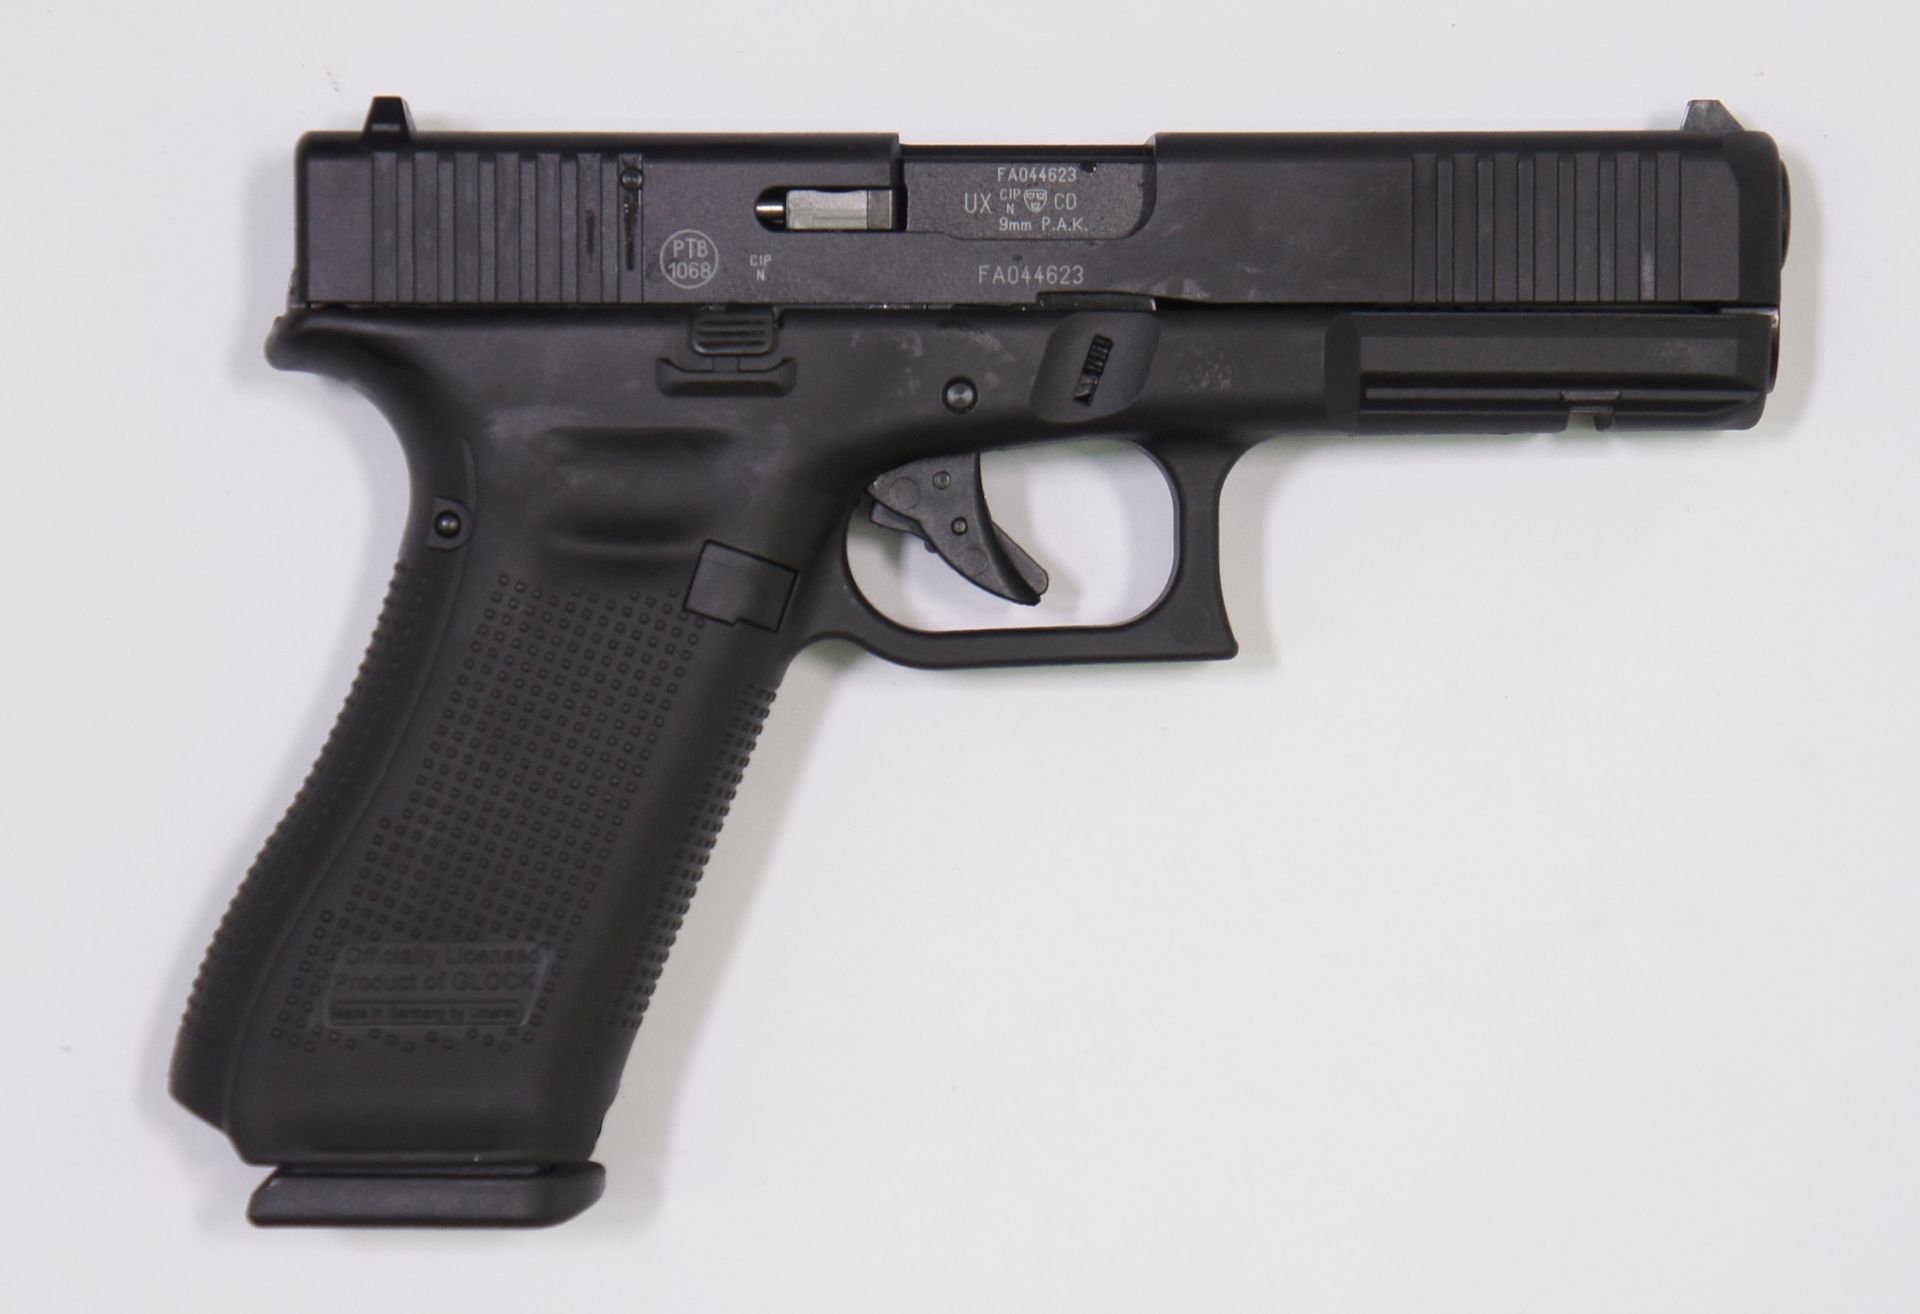 Beidseitig bedienbarer Verschlussfanghebel Garantiert sowohl Links- als auch Rechtsschützen eine einfache Handhabung der Pistole.